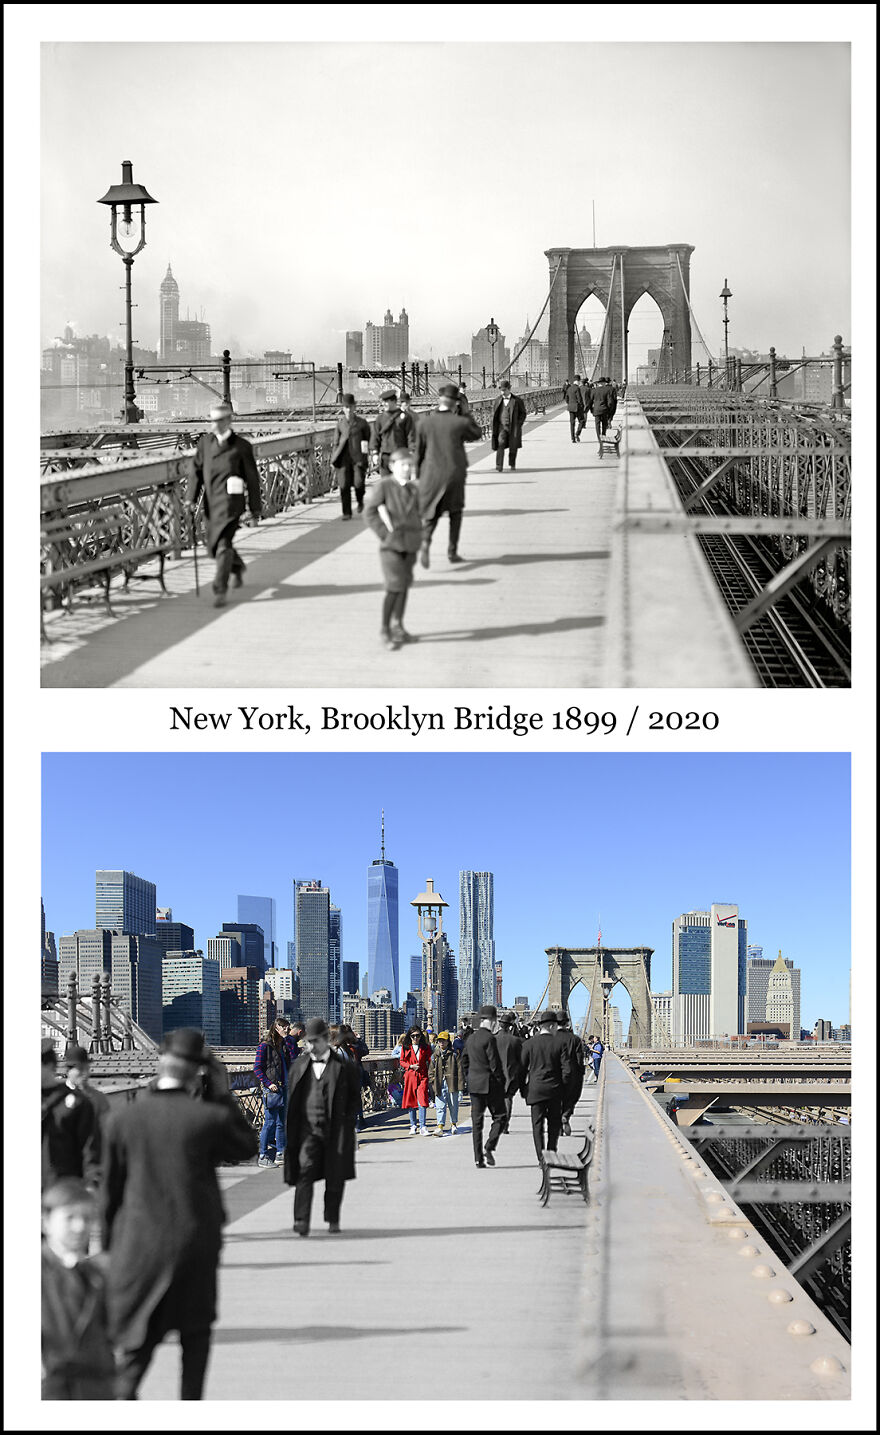 New York Brooklyn Bridge 63cdf1b6dbad8 880